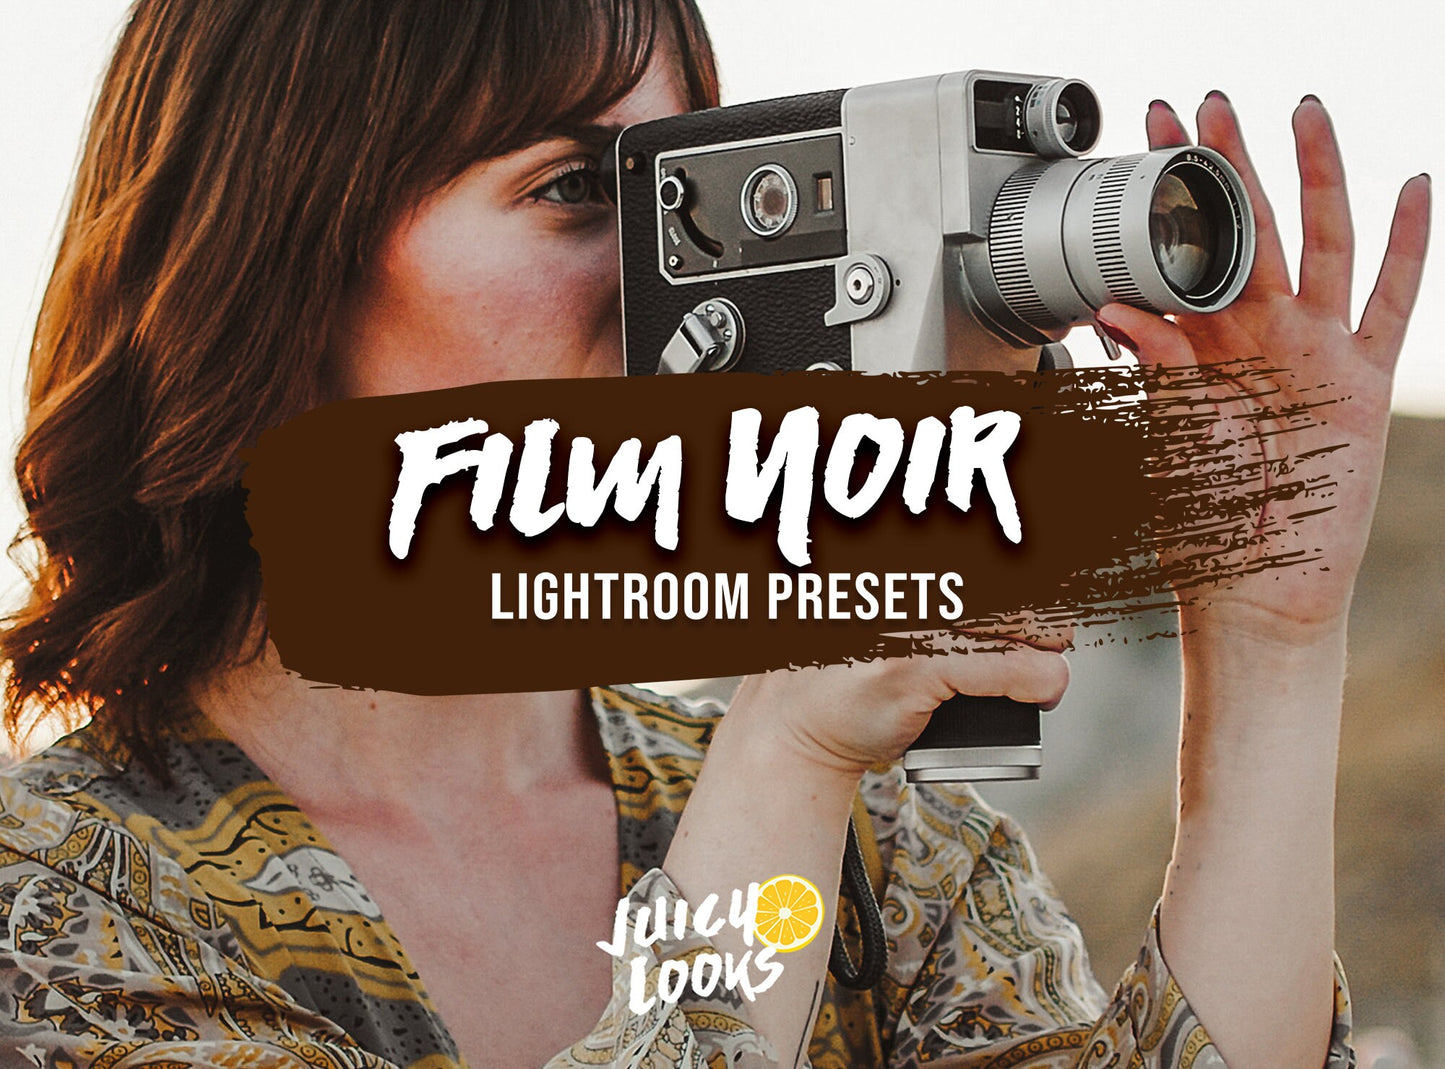 Film Noir Lightroom Presets for Mobile & Desktop - Juicy Looks Presets